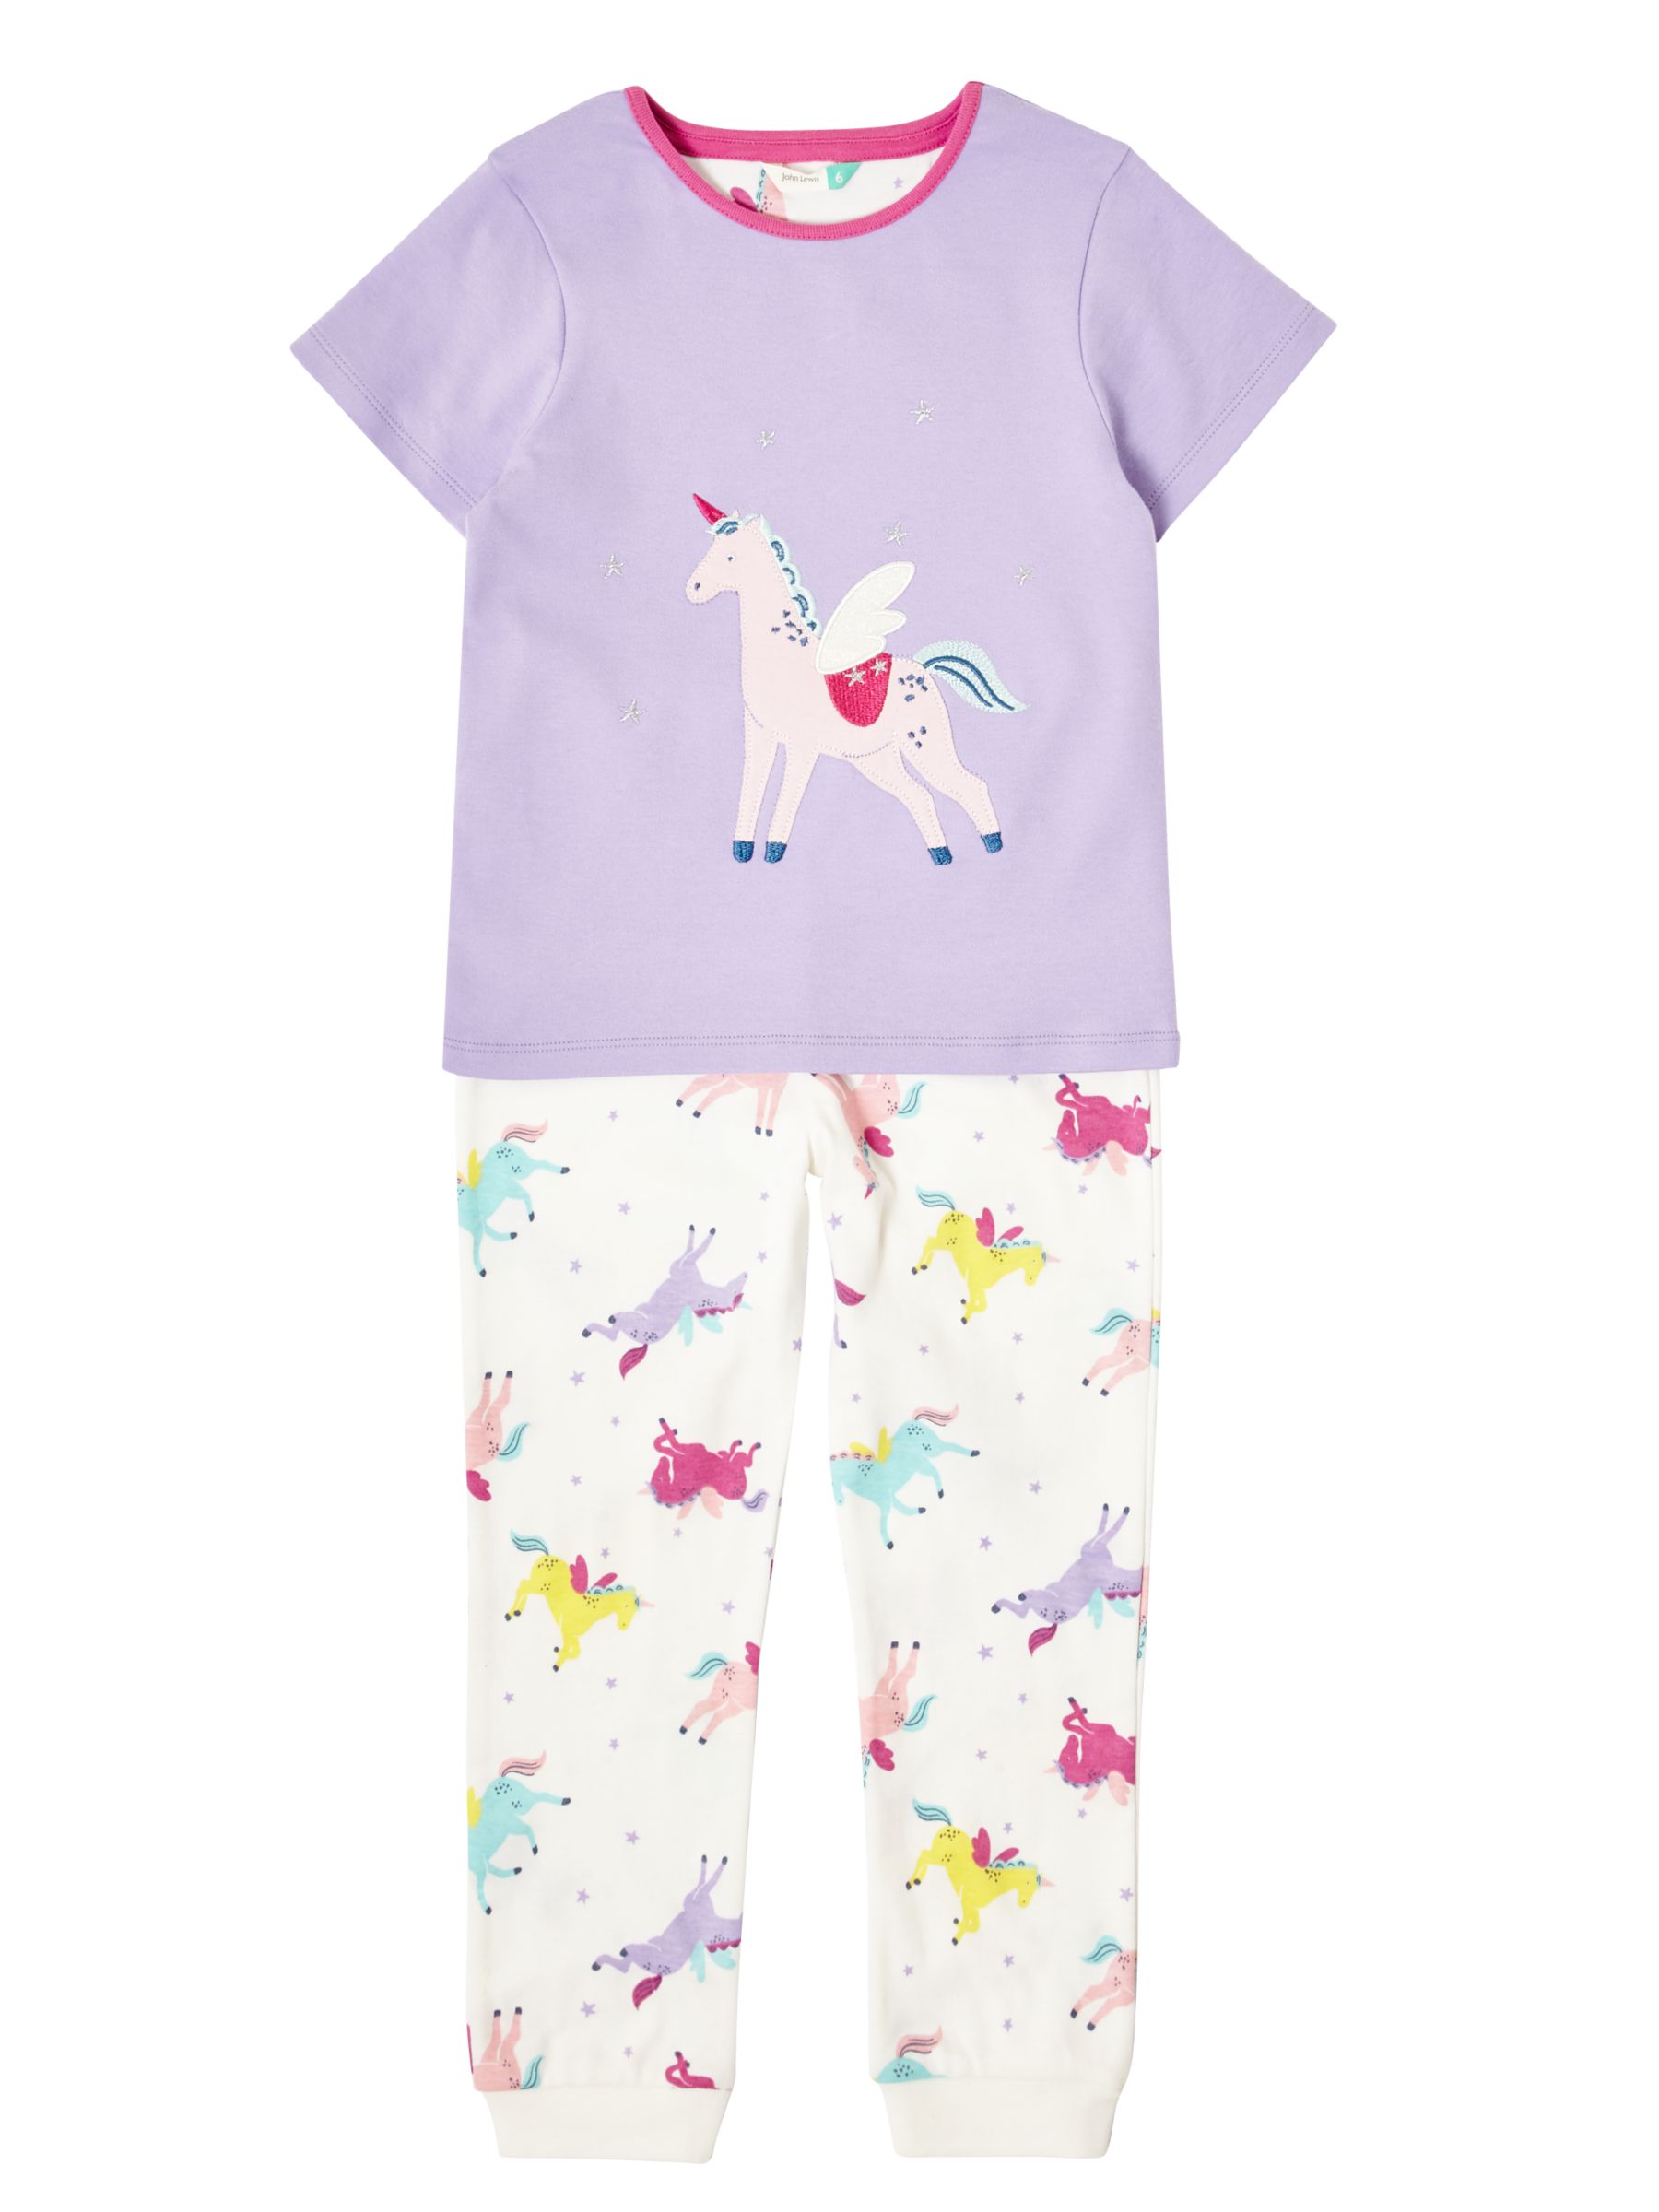 John Lewis & Partners Girls' Unicorn Pyjamas, Lilac at John Lewis ...